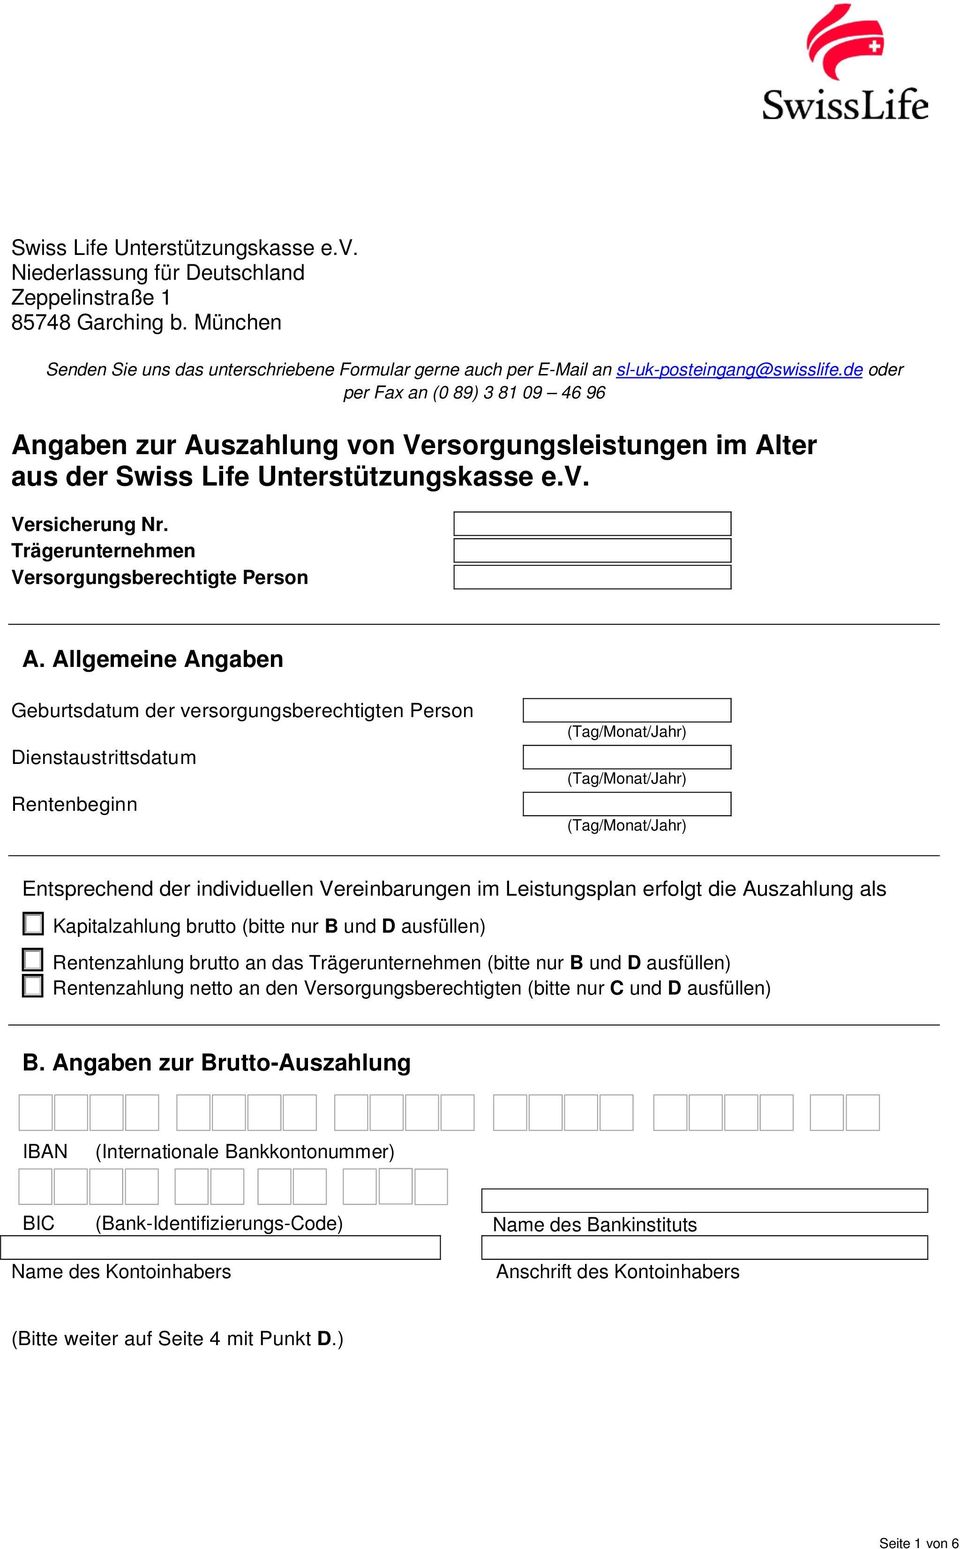 de oder per Fax an (0 89) 3 81 09 46 96 Angaben zur Auszahlung von Versorgungsleistungen im Alter aus der Swiss Life Unterstützungskasse e.v. Versicherung Nr.